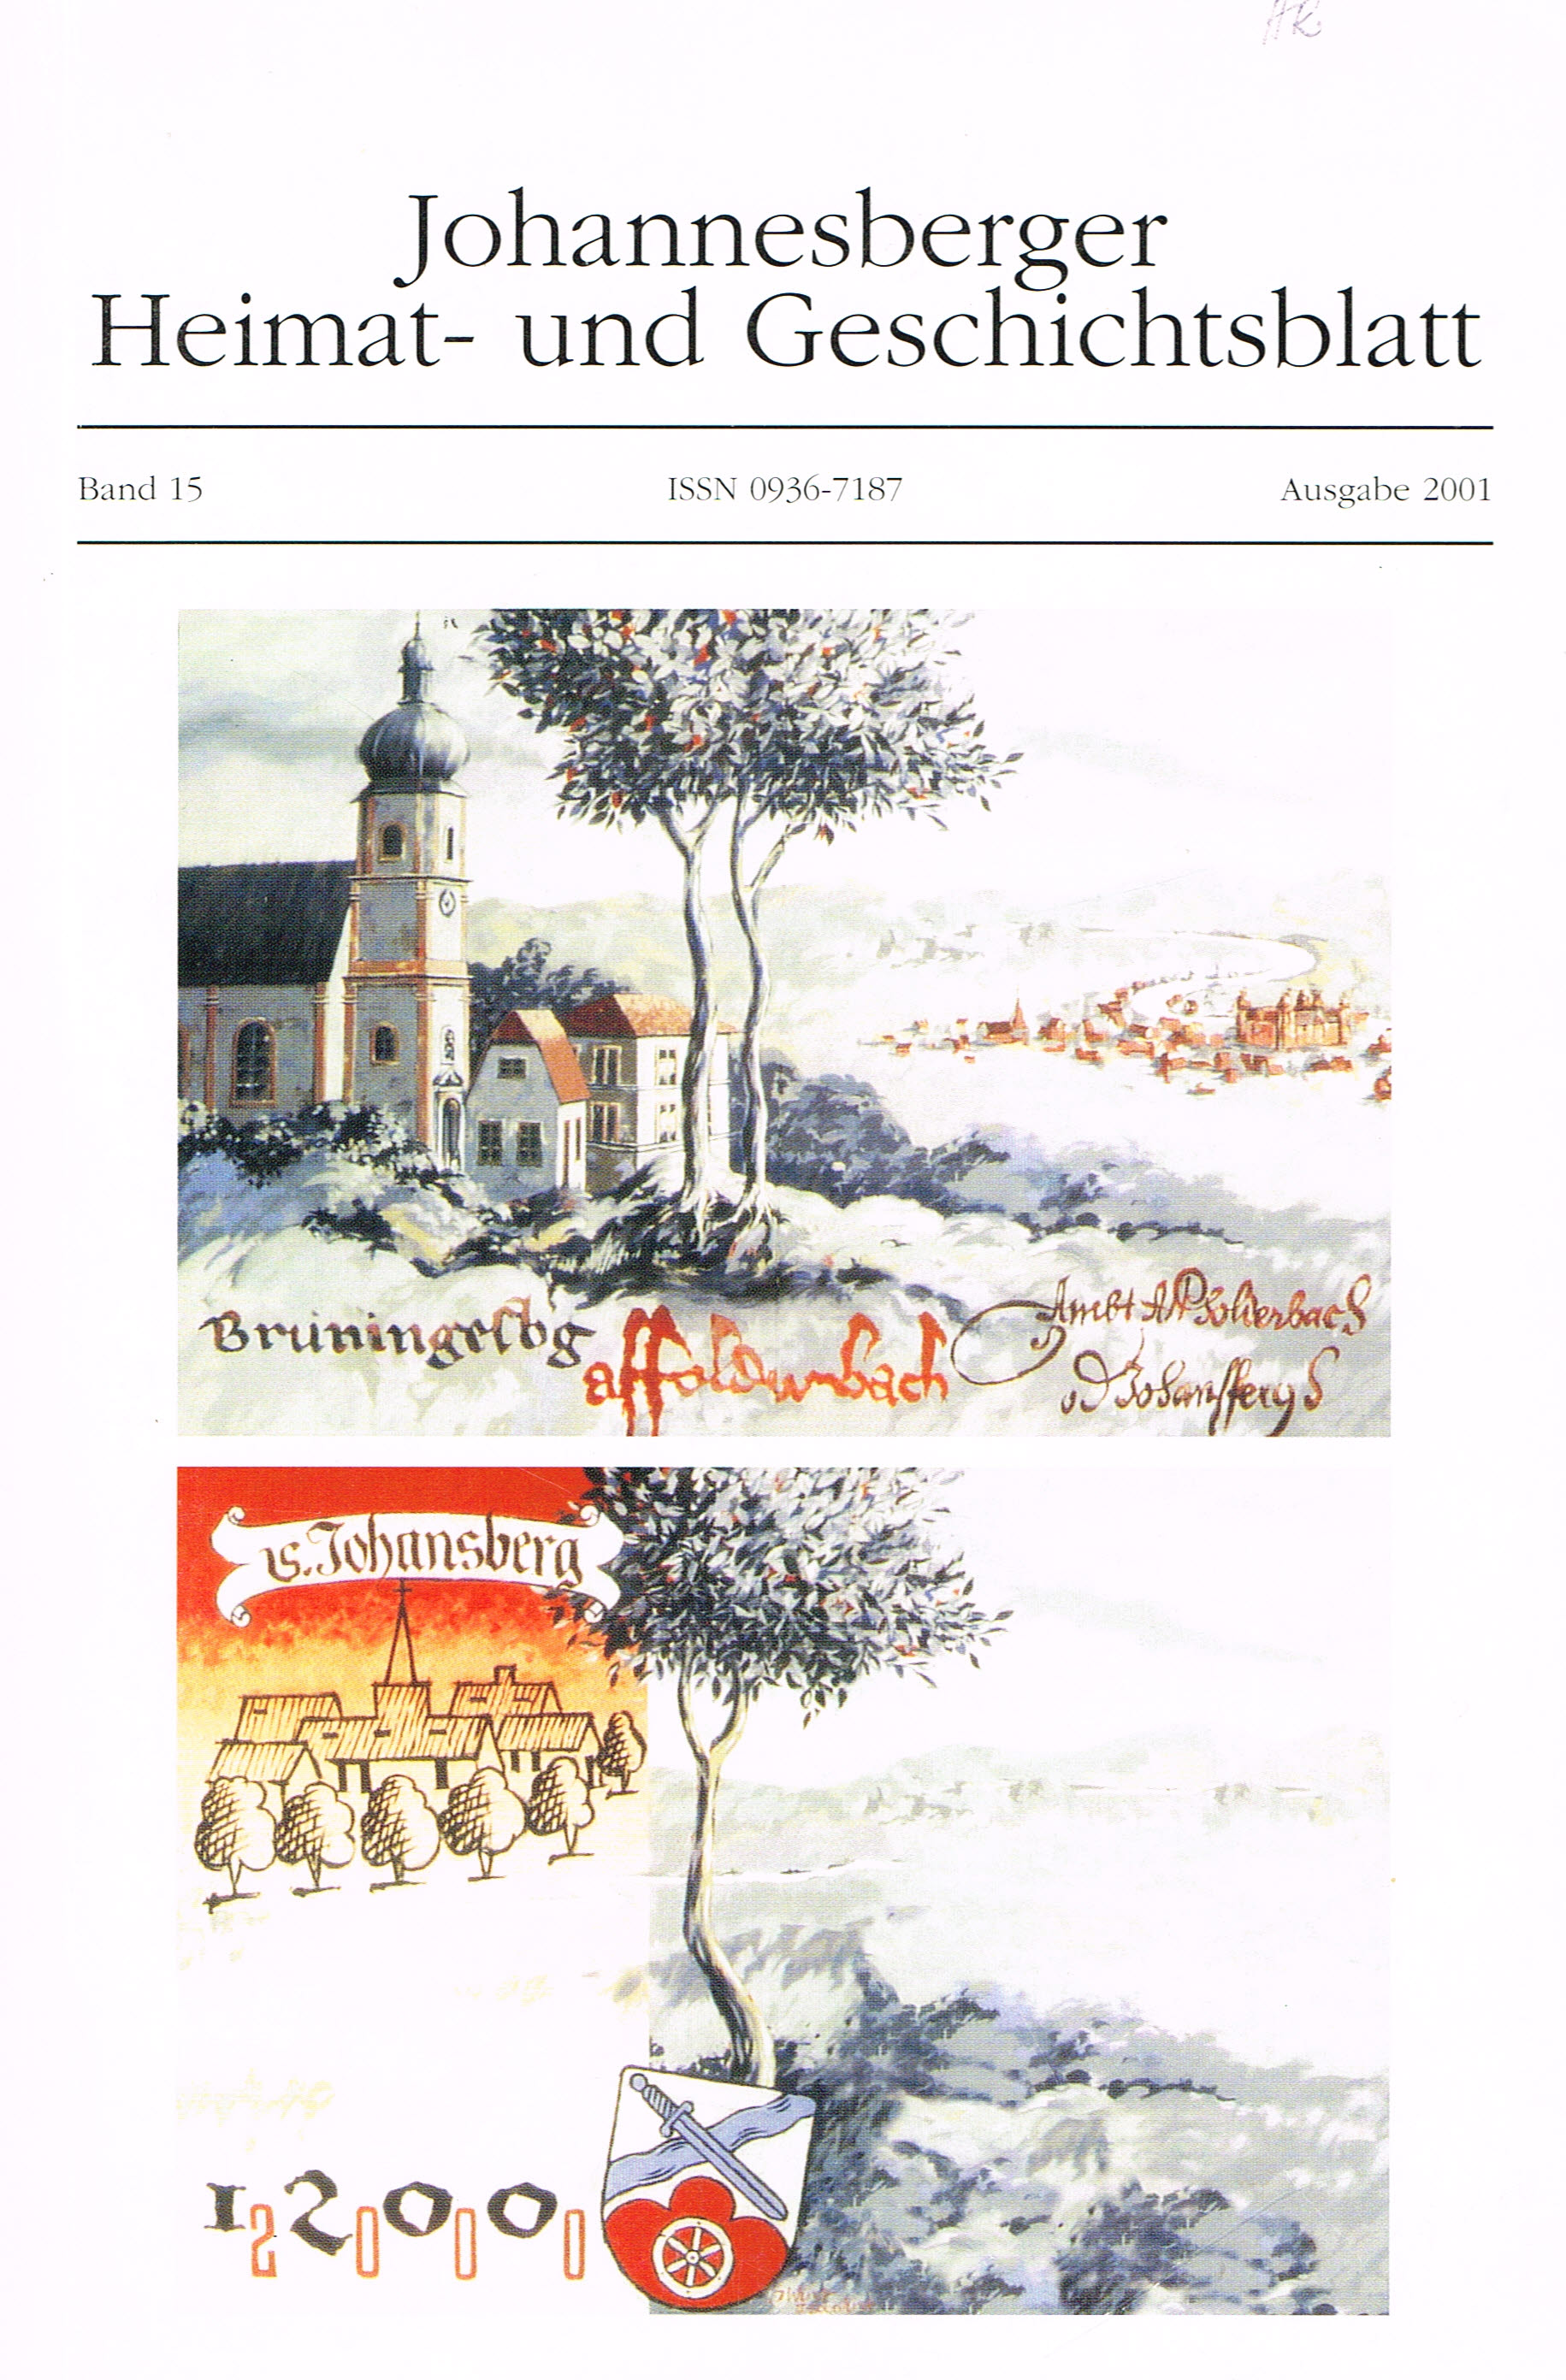 Dieses Bild zeigt das Cover des Jahrbuches 2001